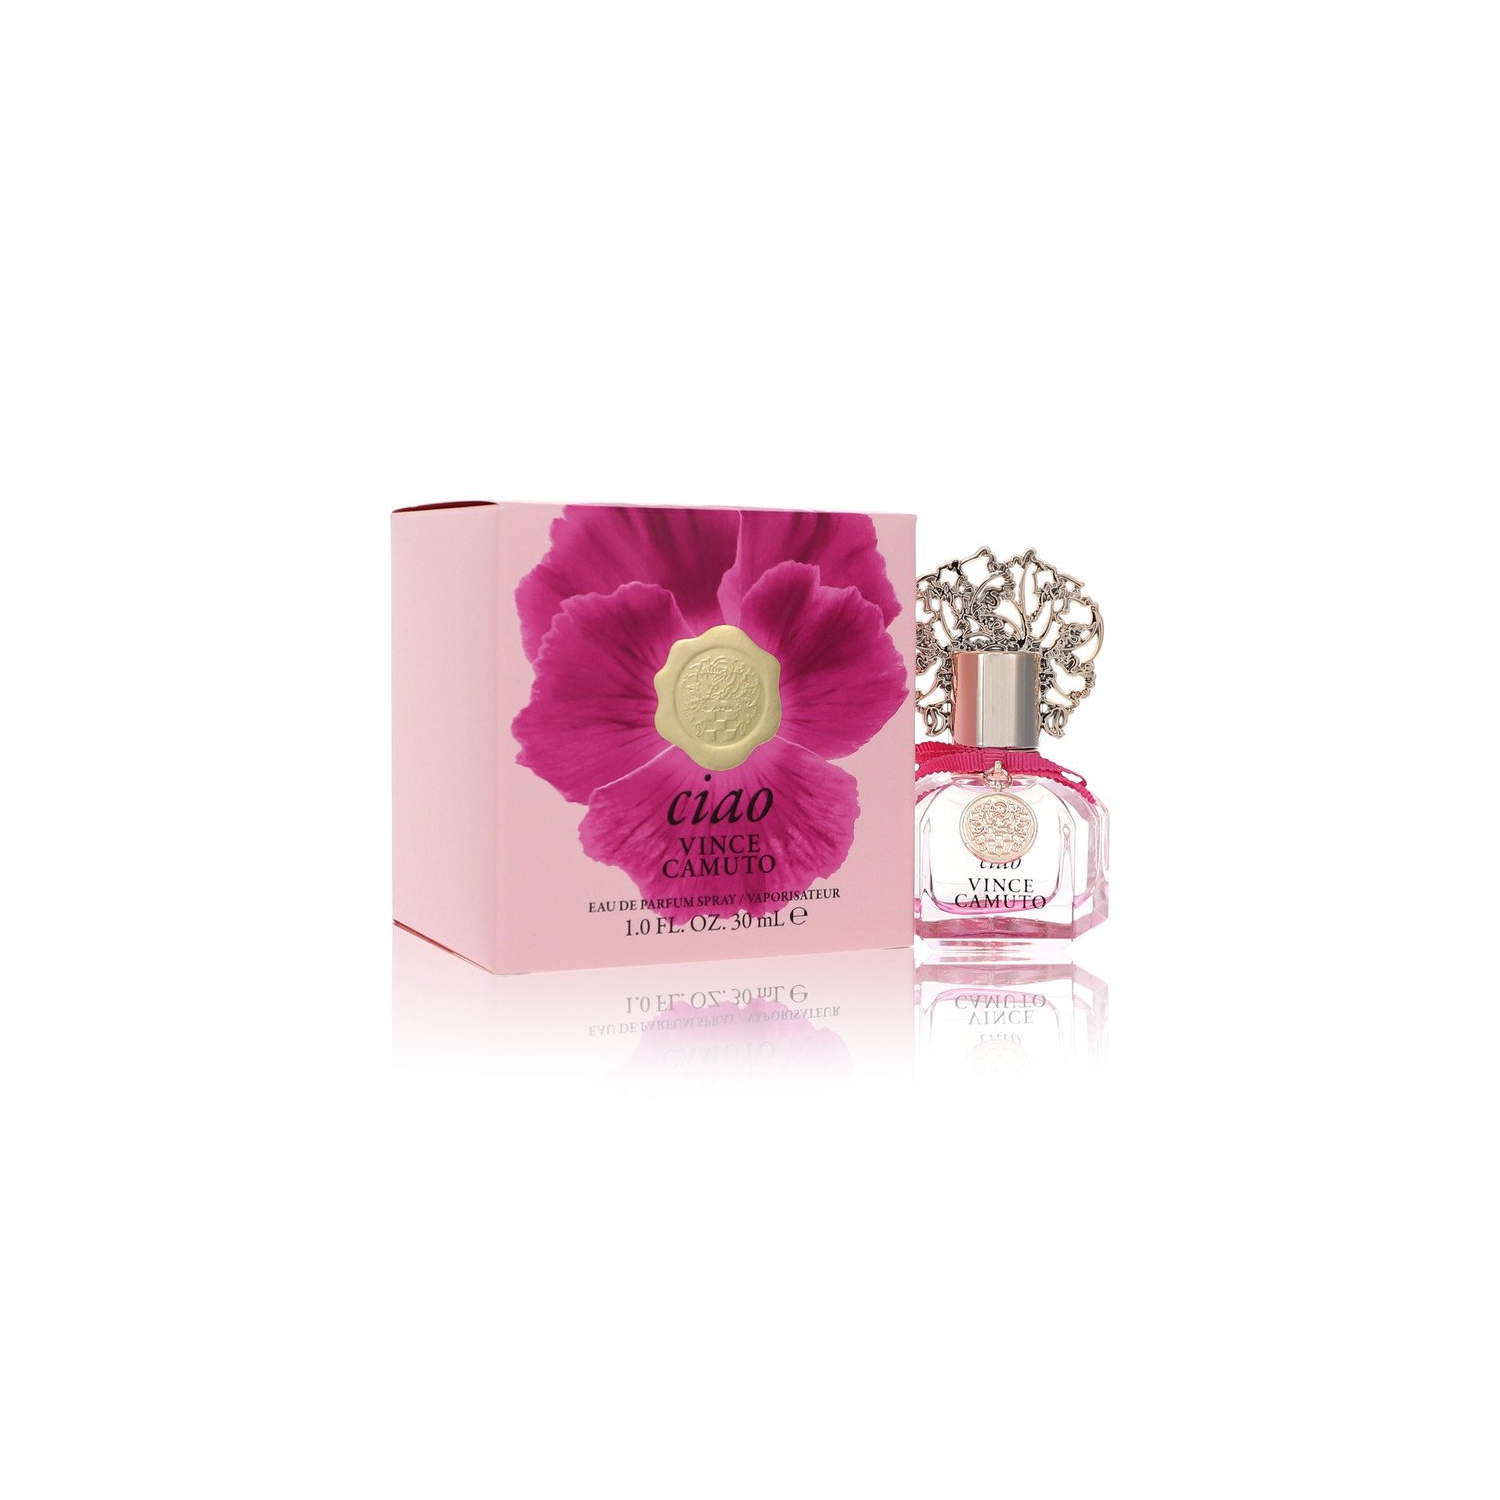 Vince Camuto Ciao 3.4 fl oz Women's Eau de Parfum for sale online